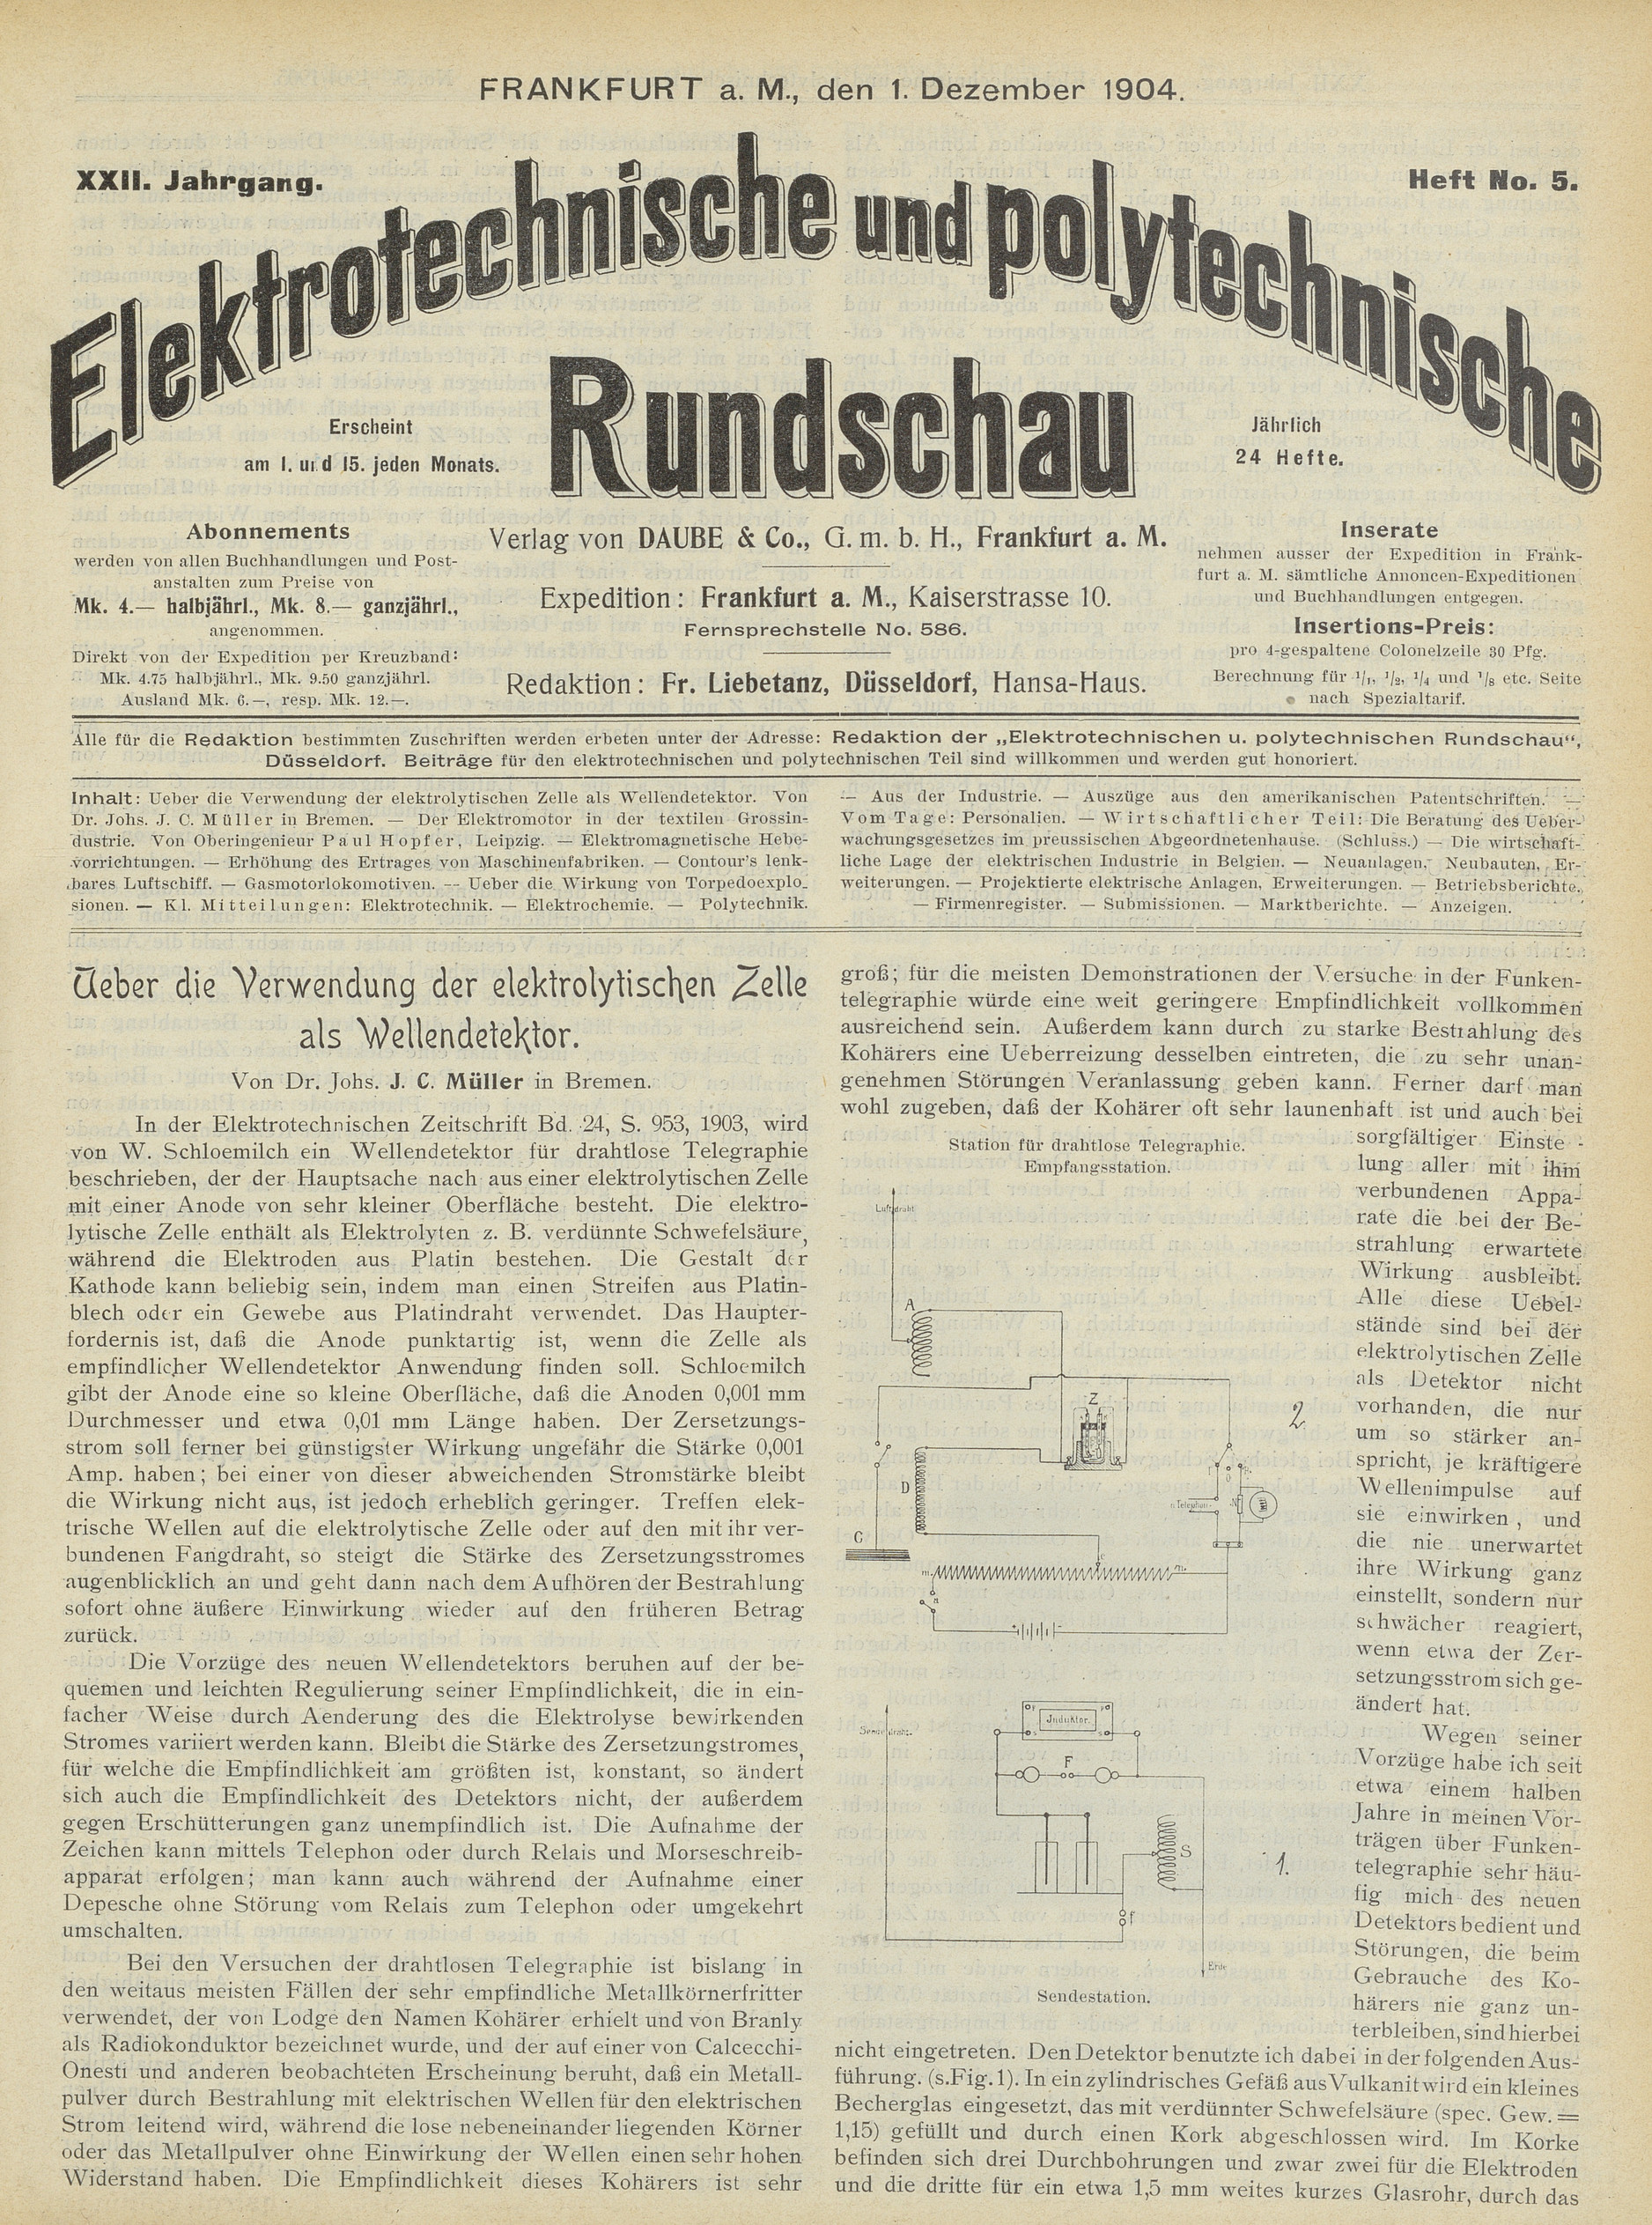 Elektrotechnische und polytechnische Rundschau, XXII. Jahrgang, Heft No. 5